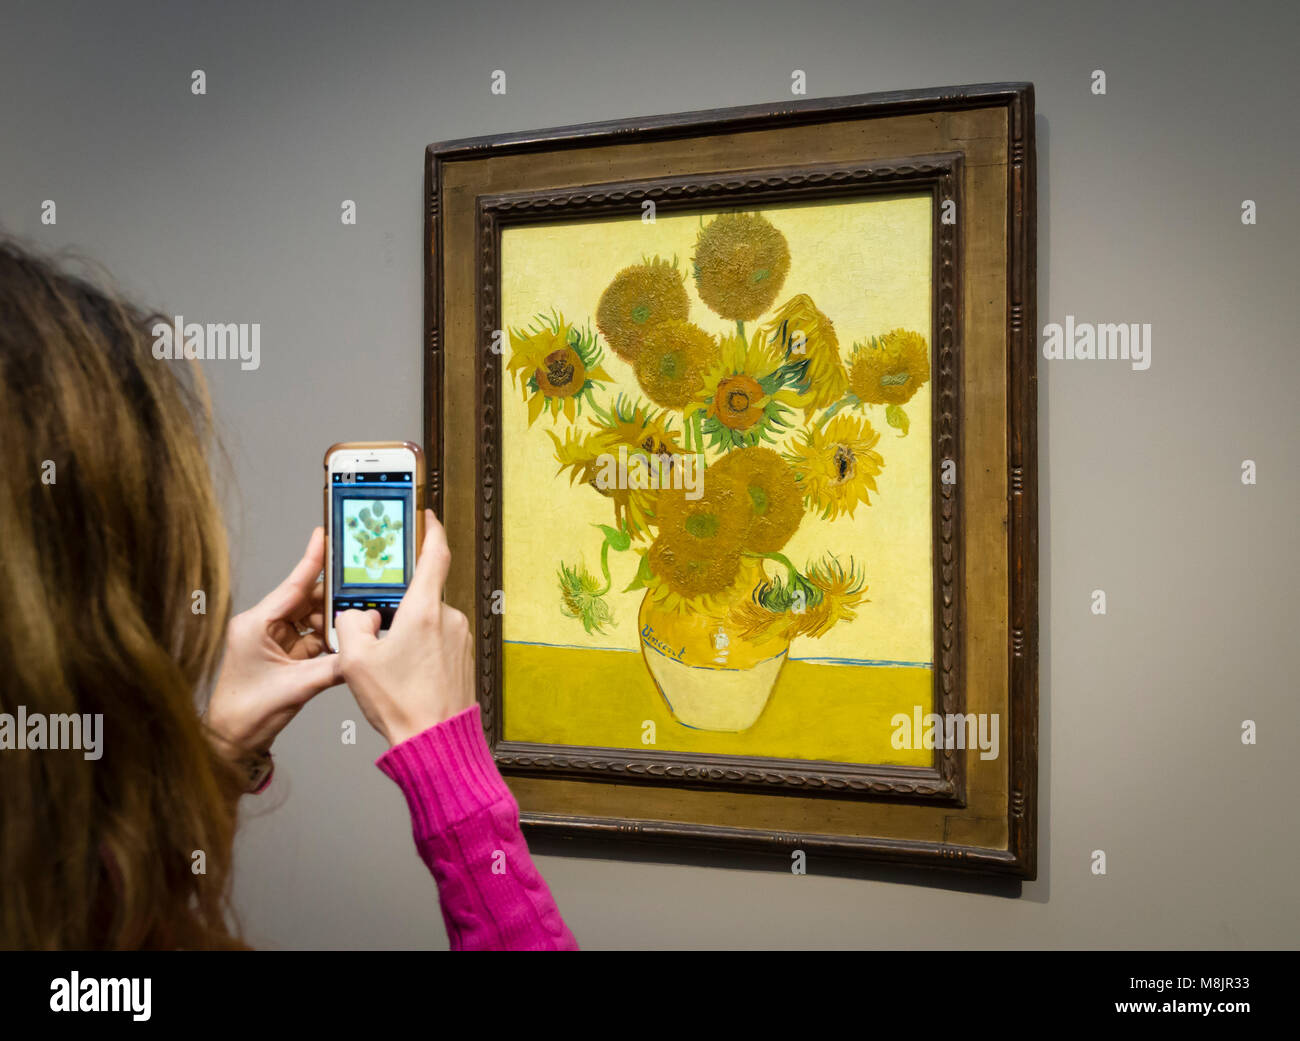 Londres, UK - 1 Sep 2017 : Un visiteur de la National Gallery de Londres est à l'aide de son smartphone pour prendre des photos de Vincent van Gogh peinture à l'huile "unflowers', l'une des plus célèbres pièces du musée. Banque D'Images